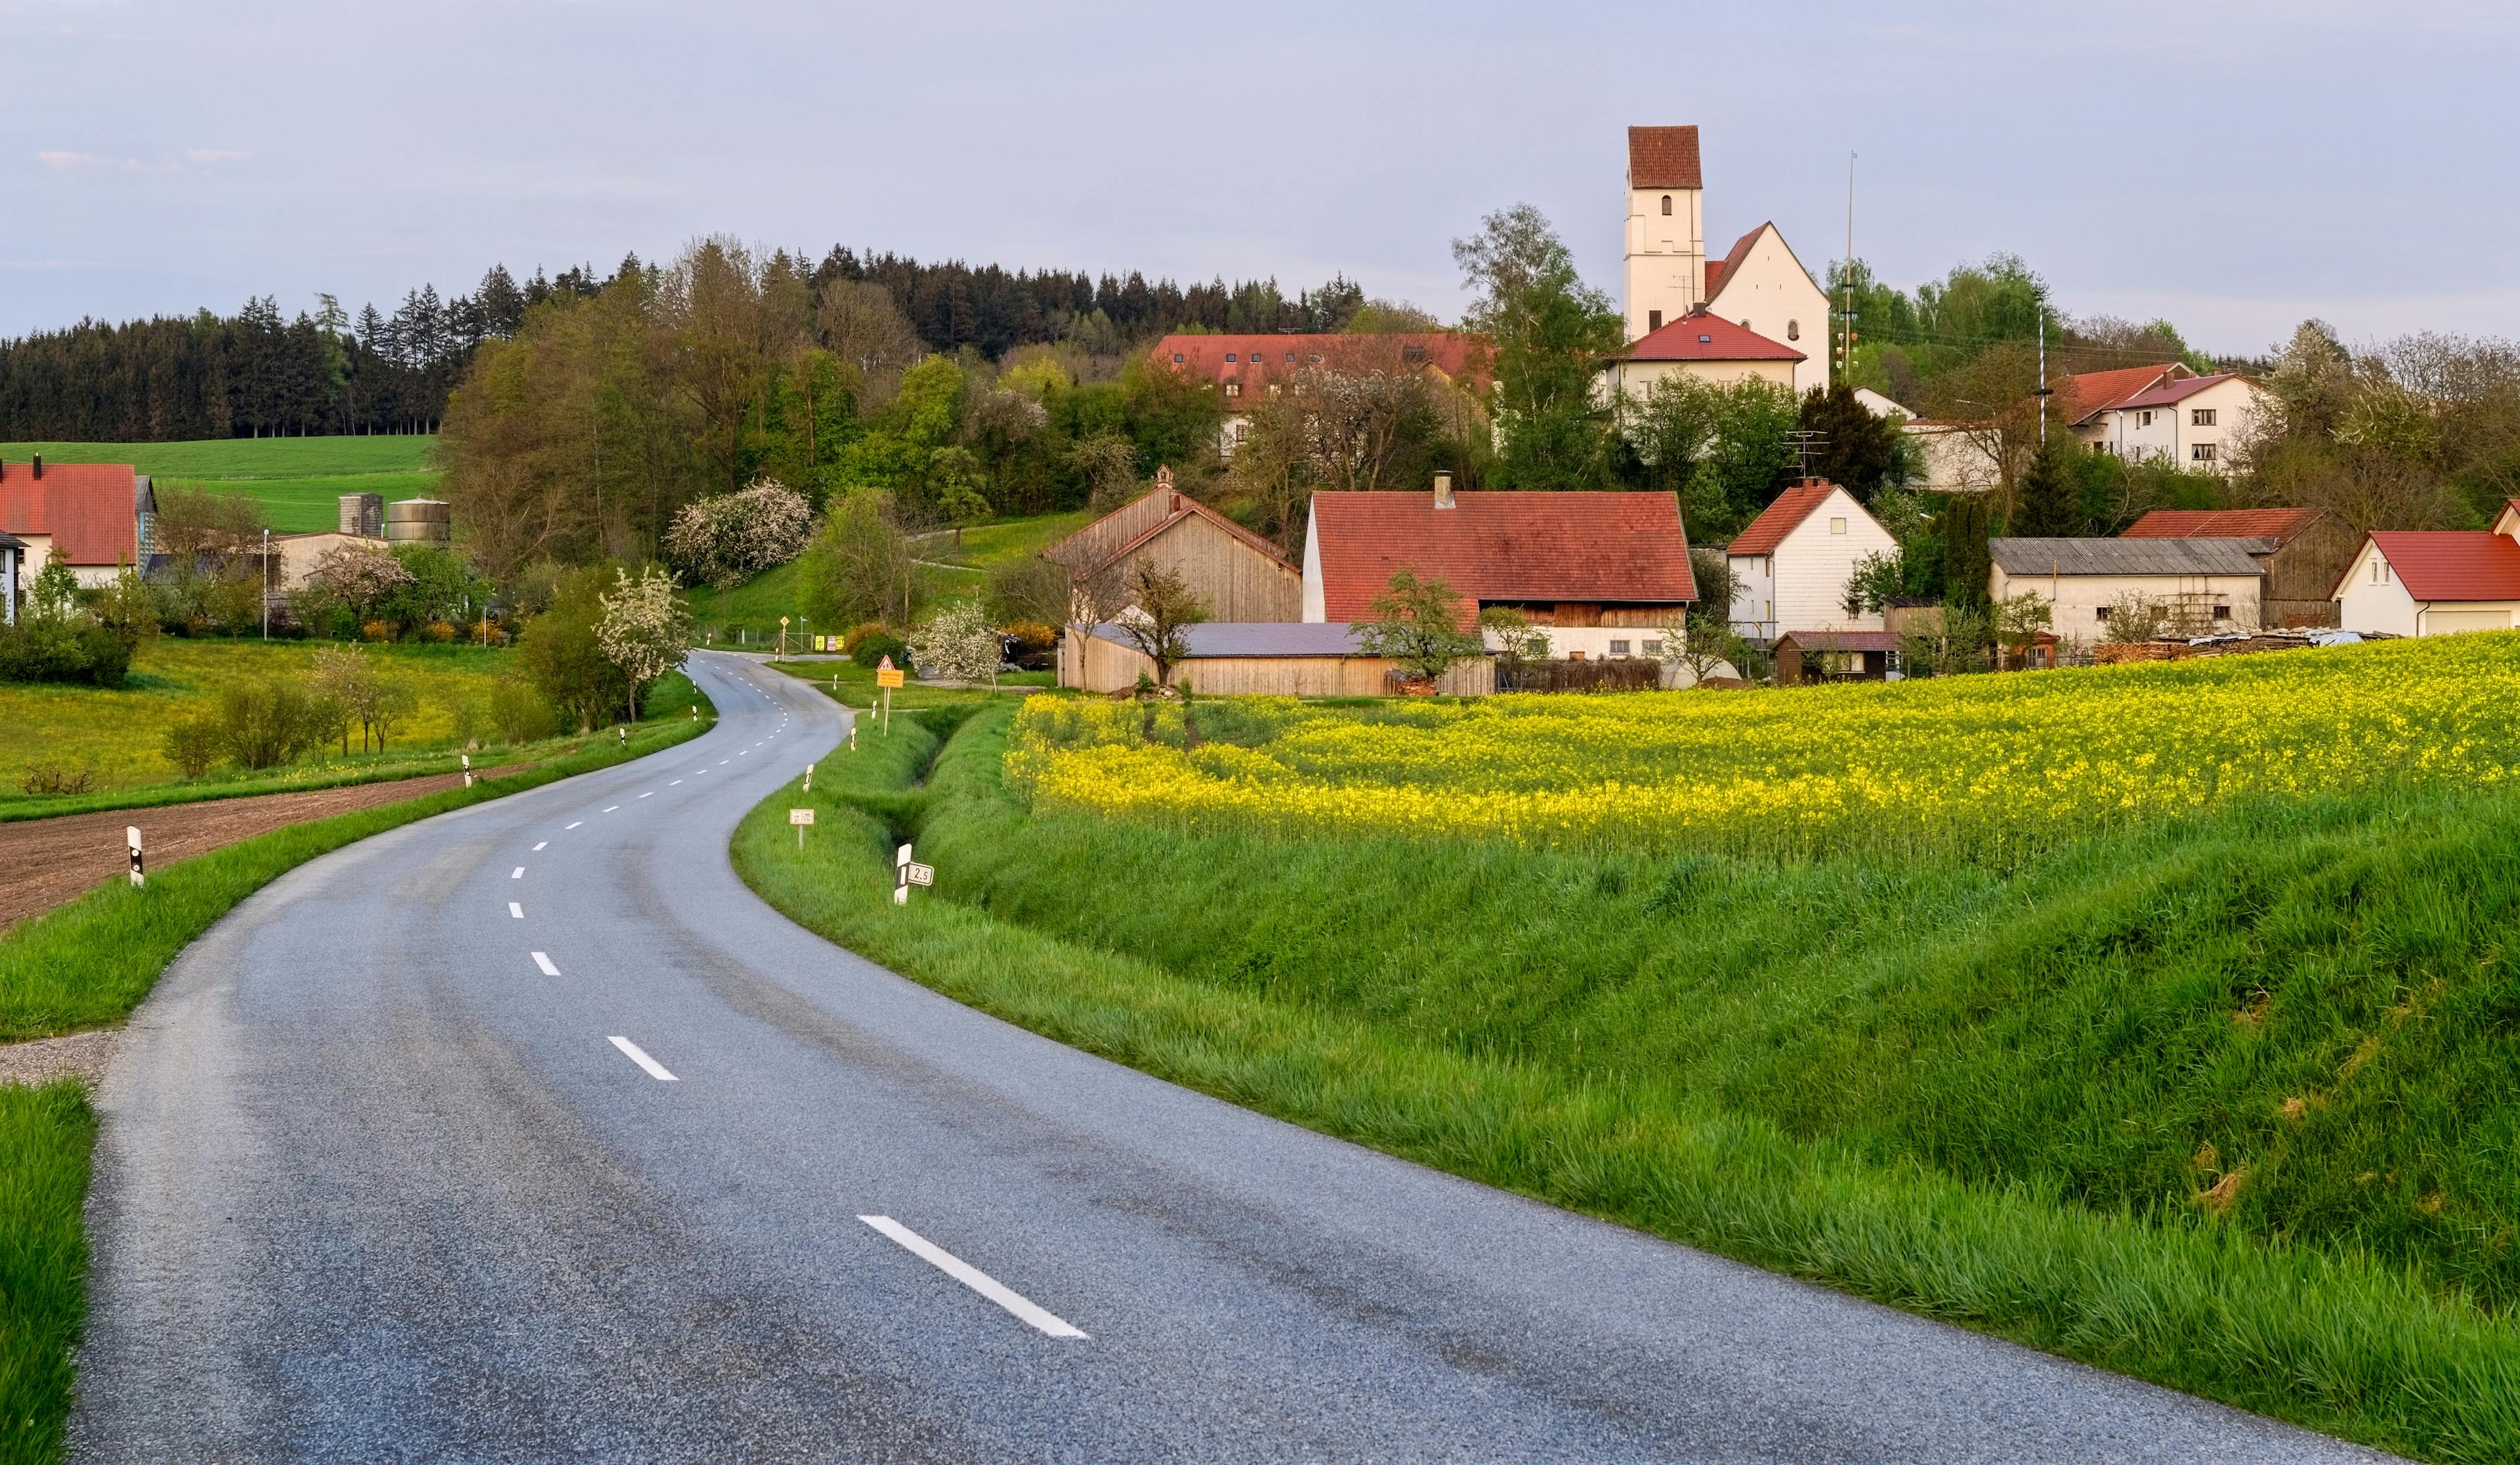 Eine Straße führt in ein Dorf, von dem man den kirchturm und einige Häuser sieht.